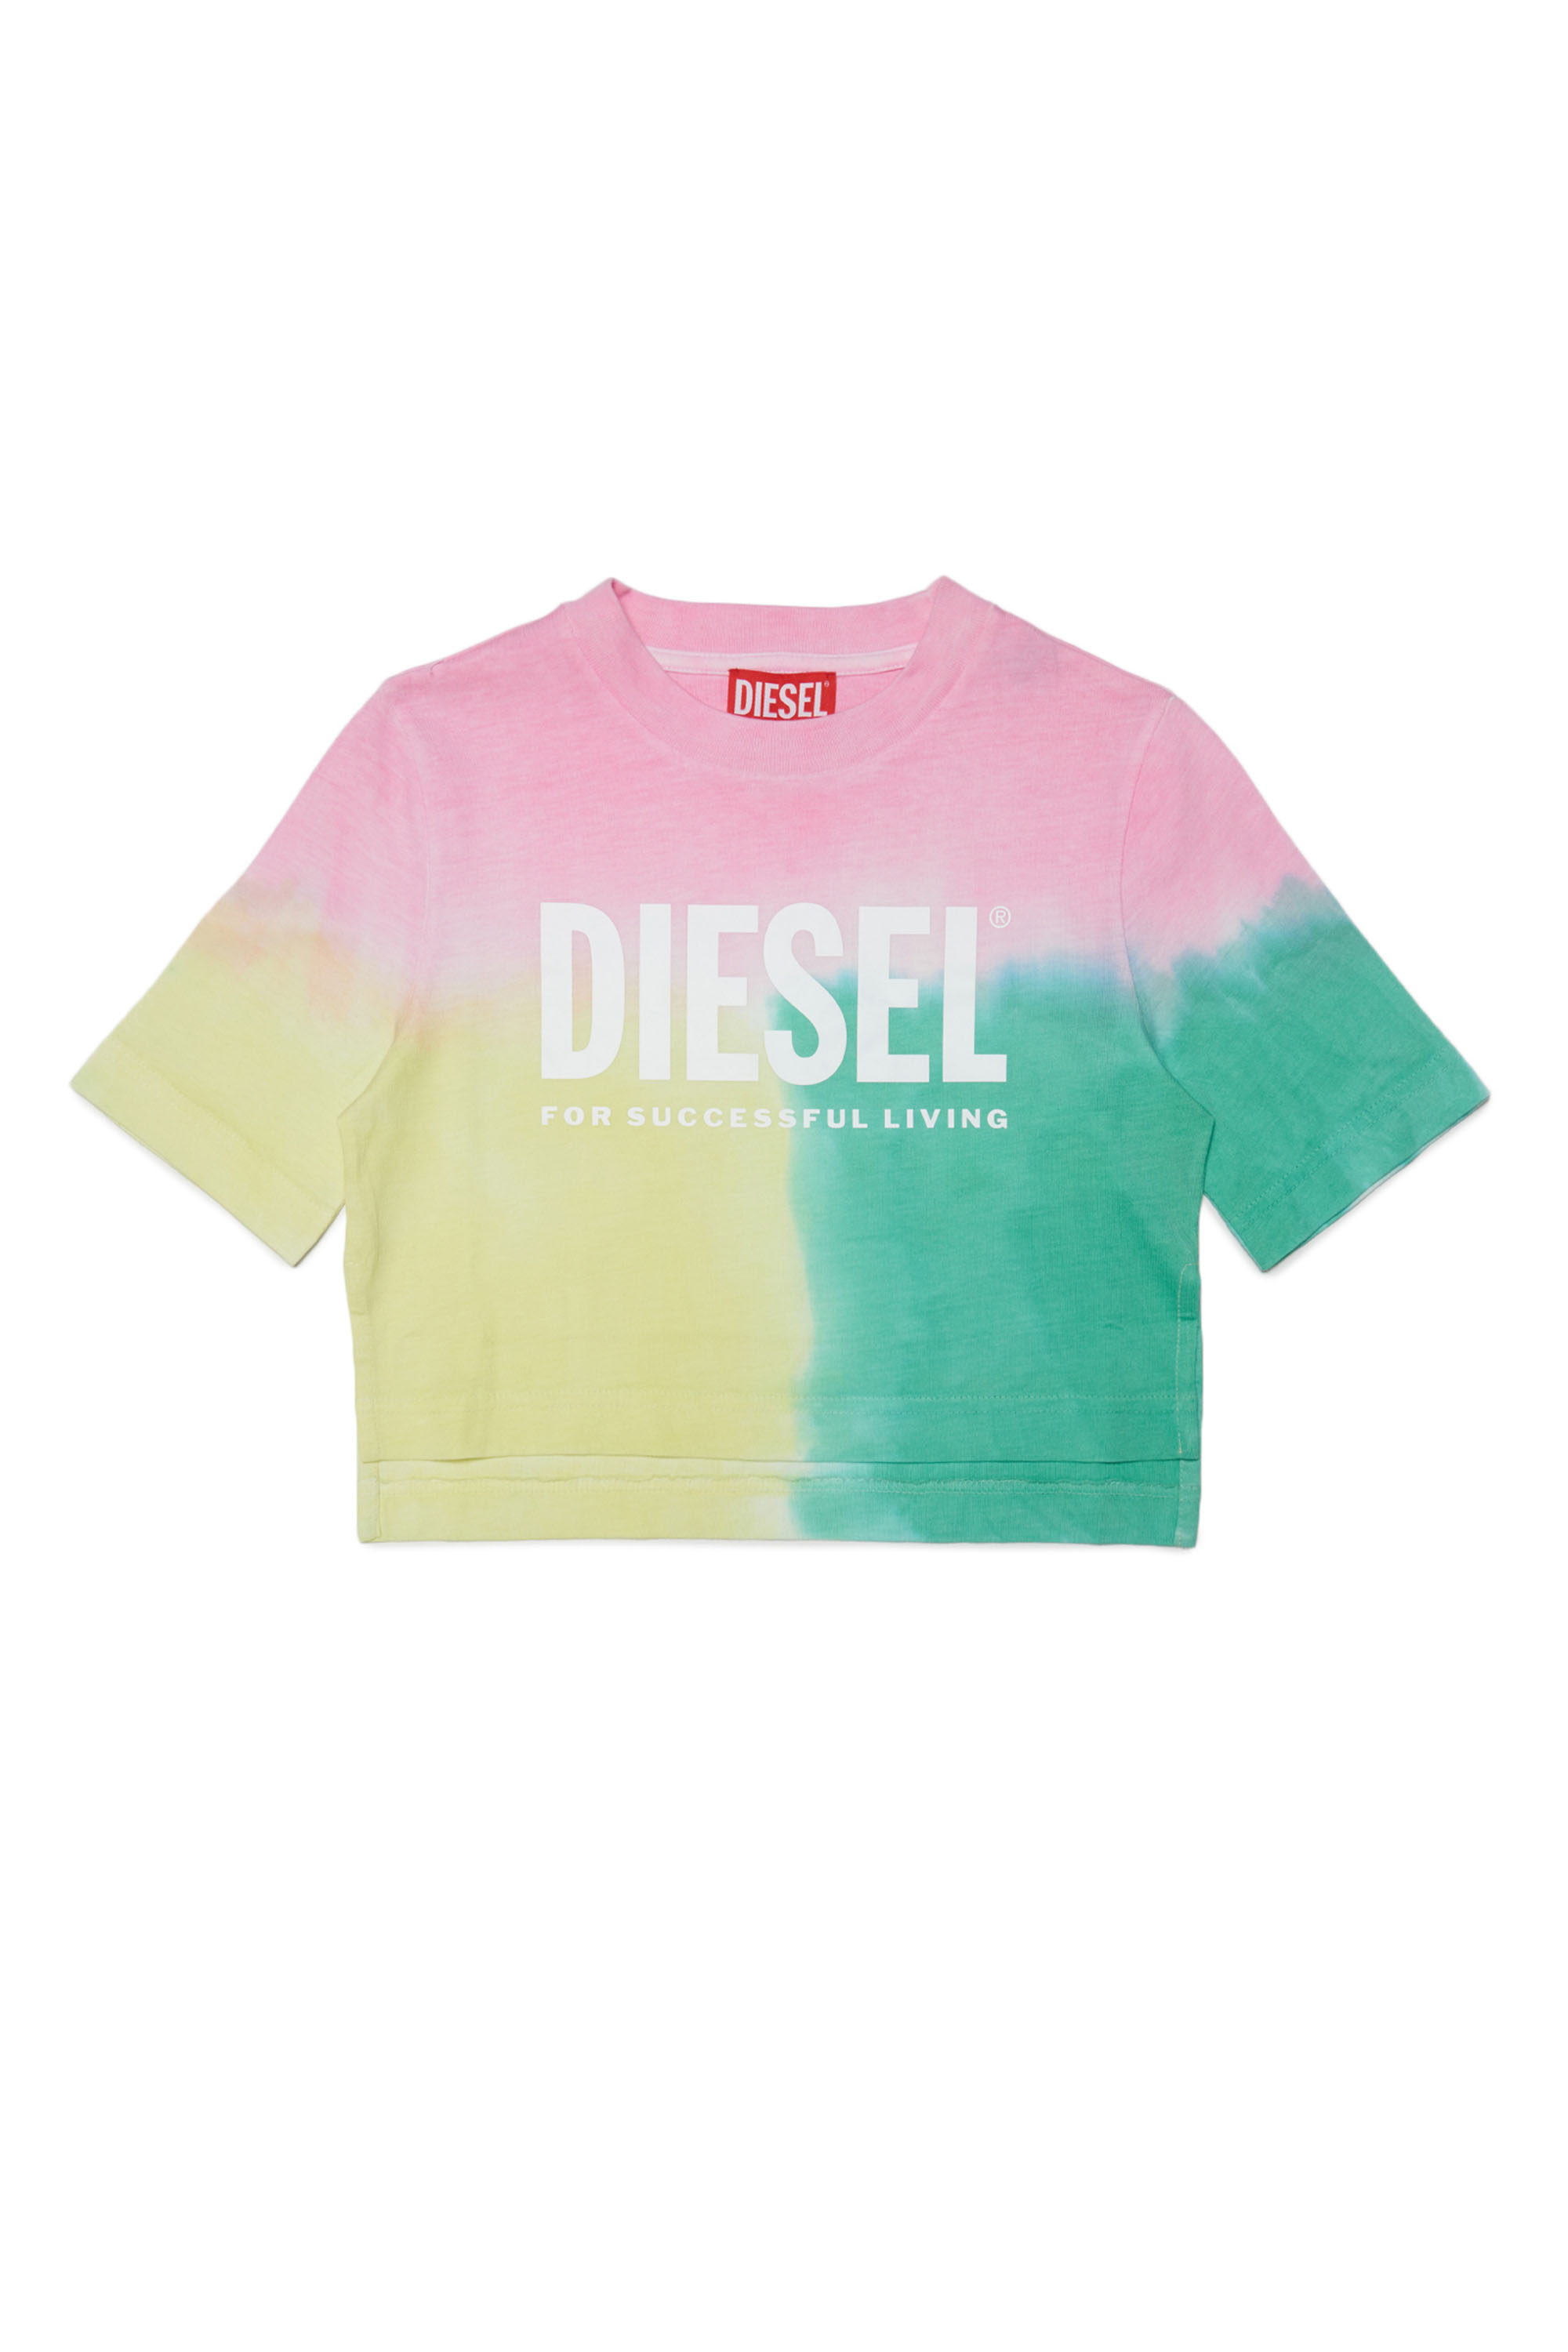 Diesel - TELLYLORI, Rosa/Verde - Image 1